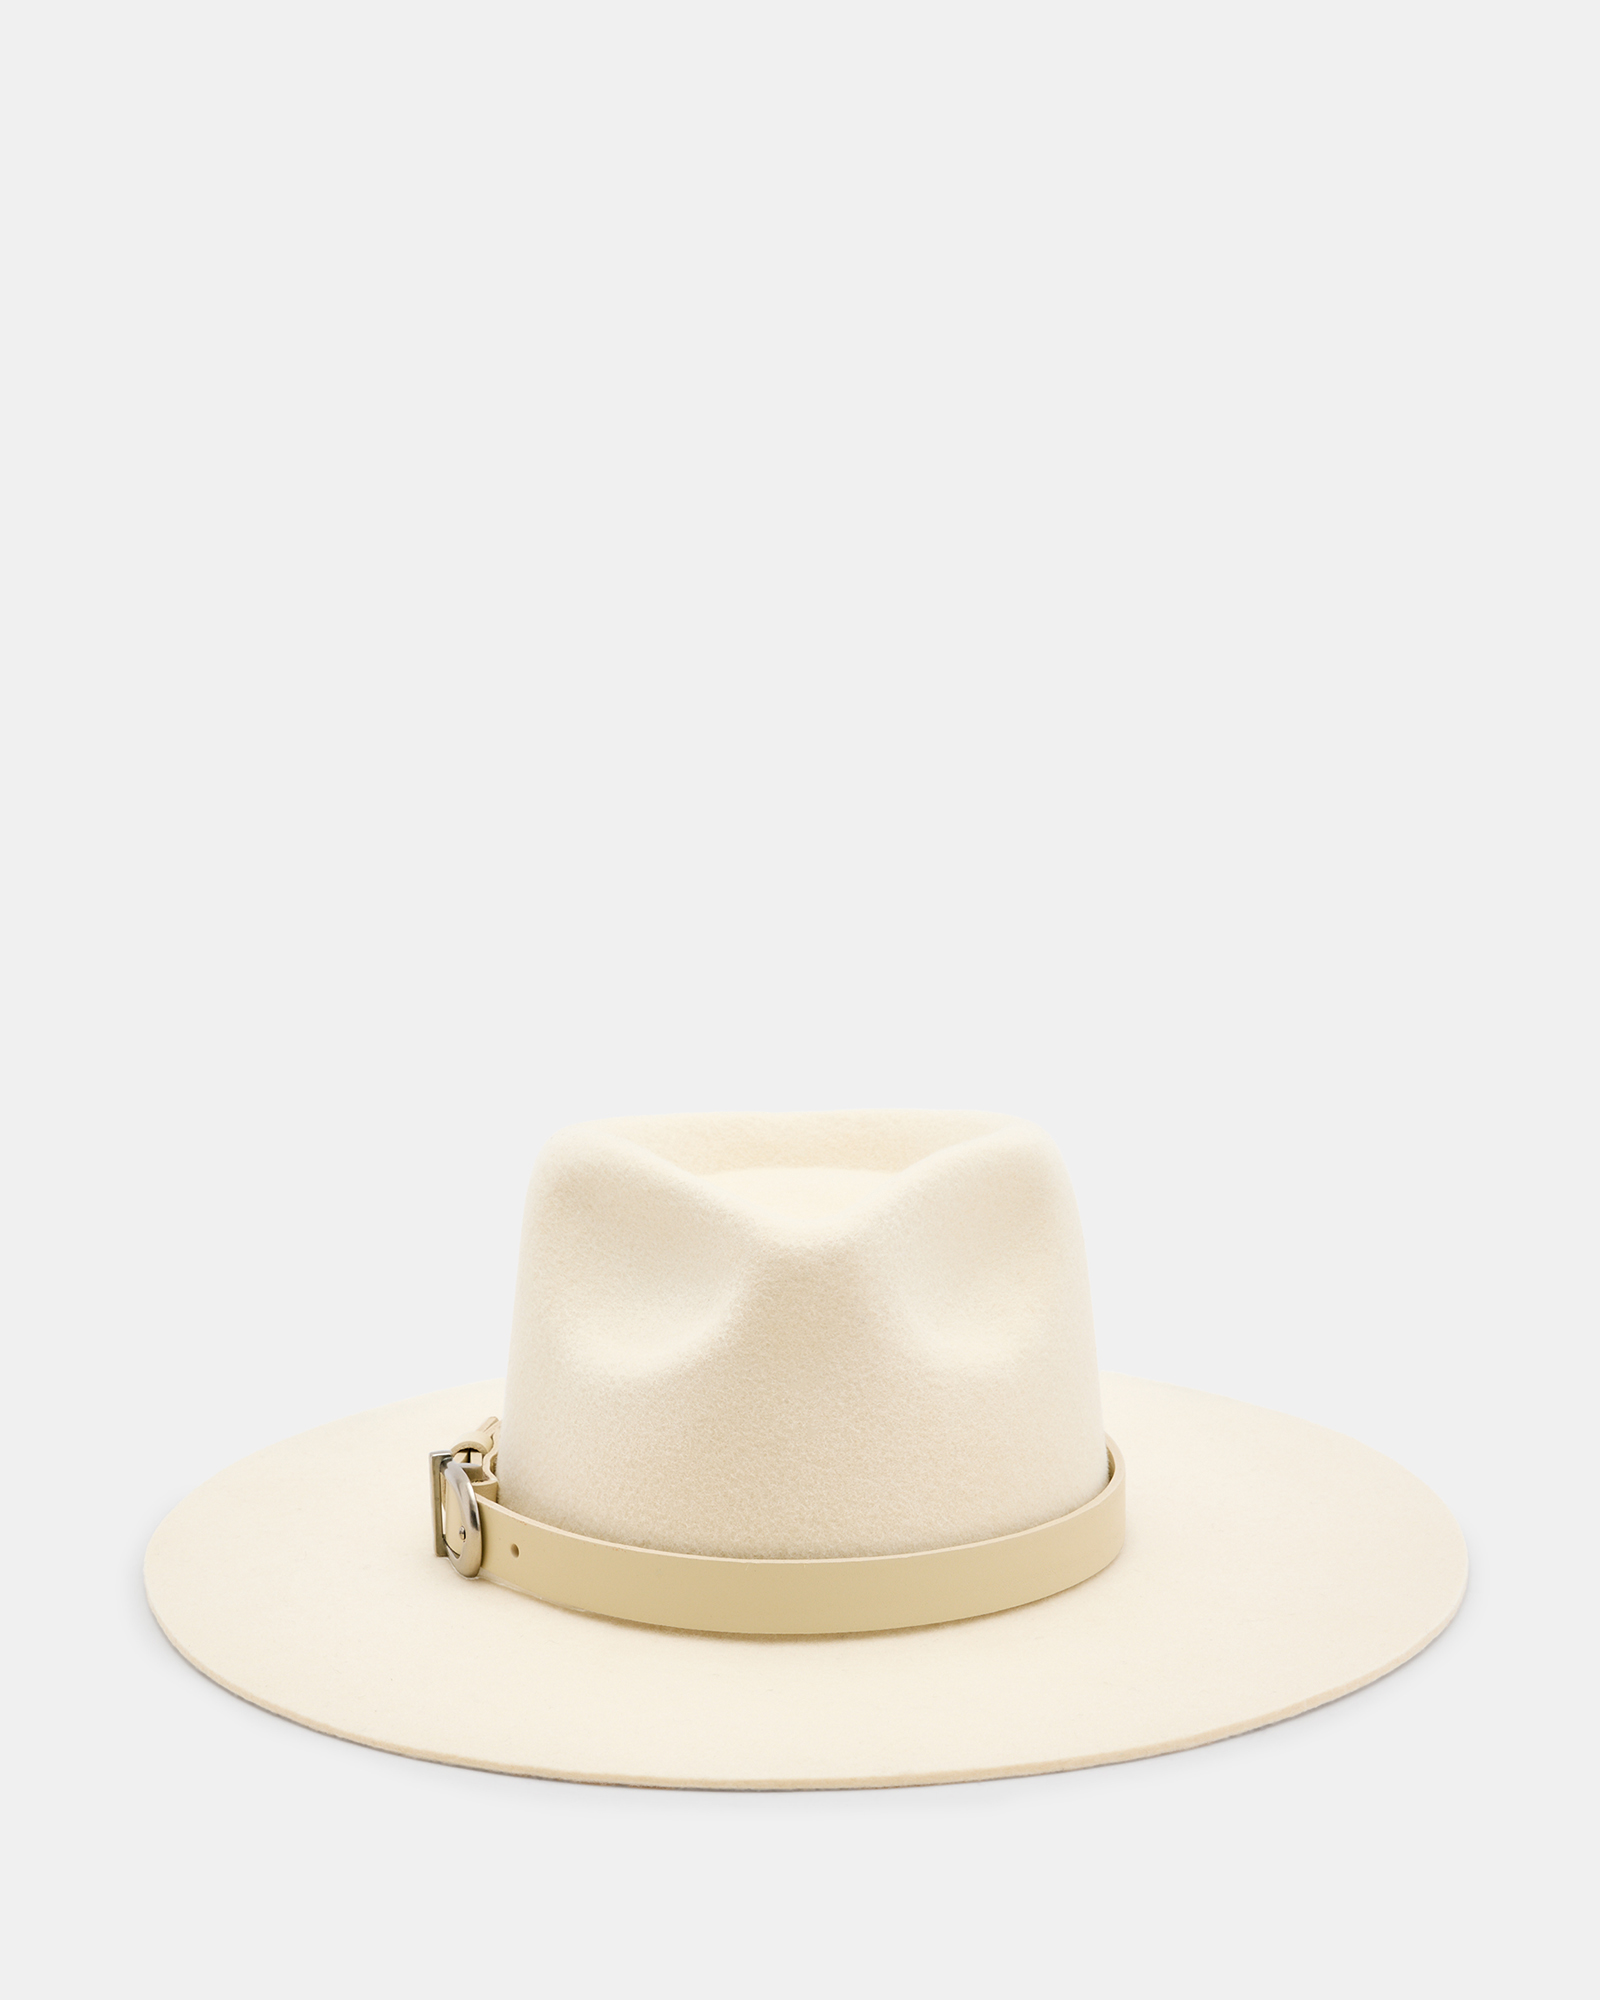 AllSaints Briony Western Bolero Hat,, ECRU/ANTQ NICKEL